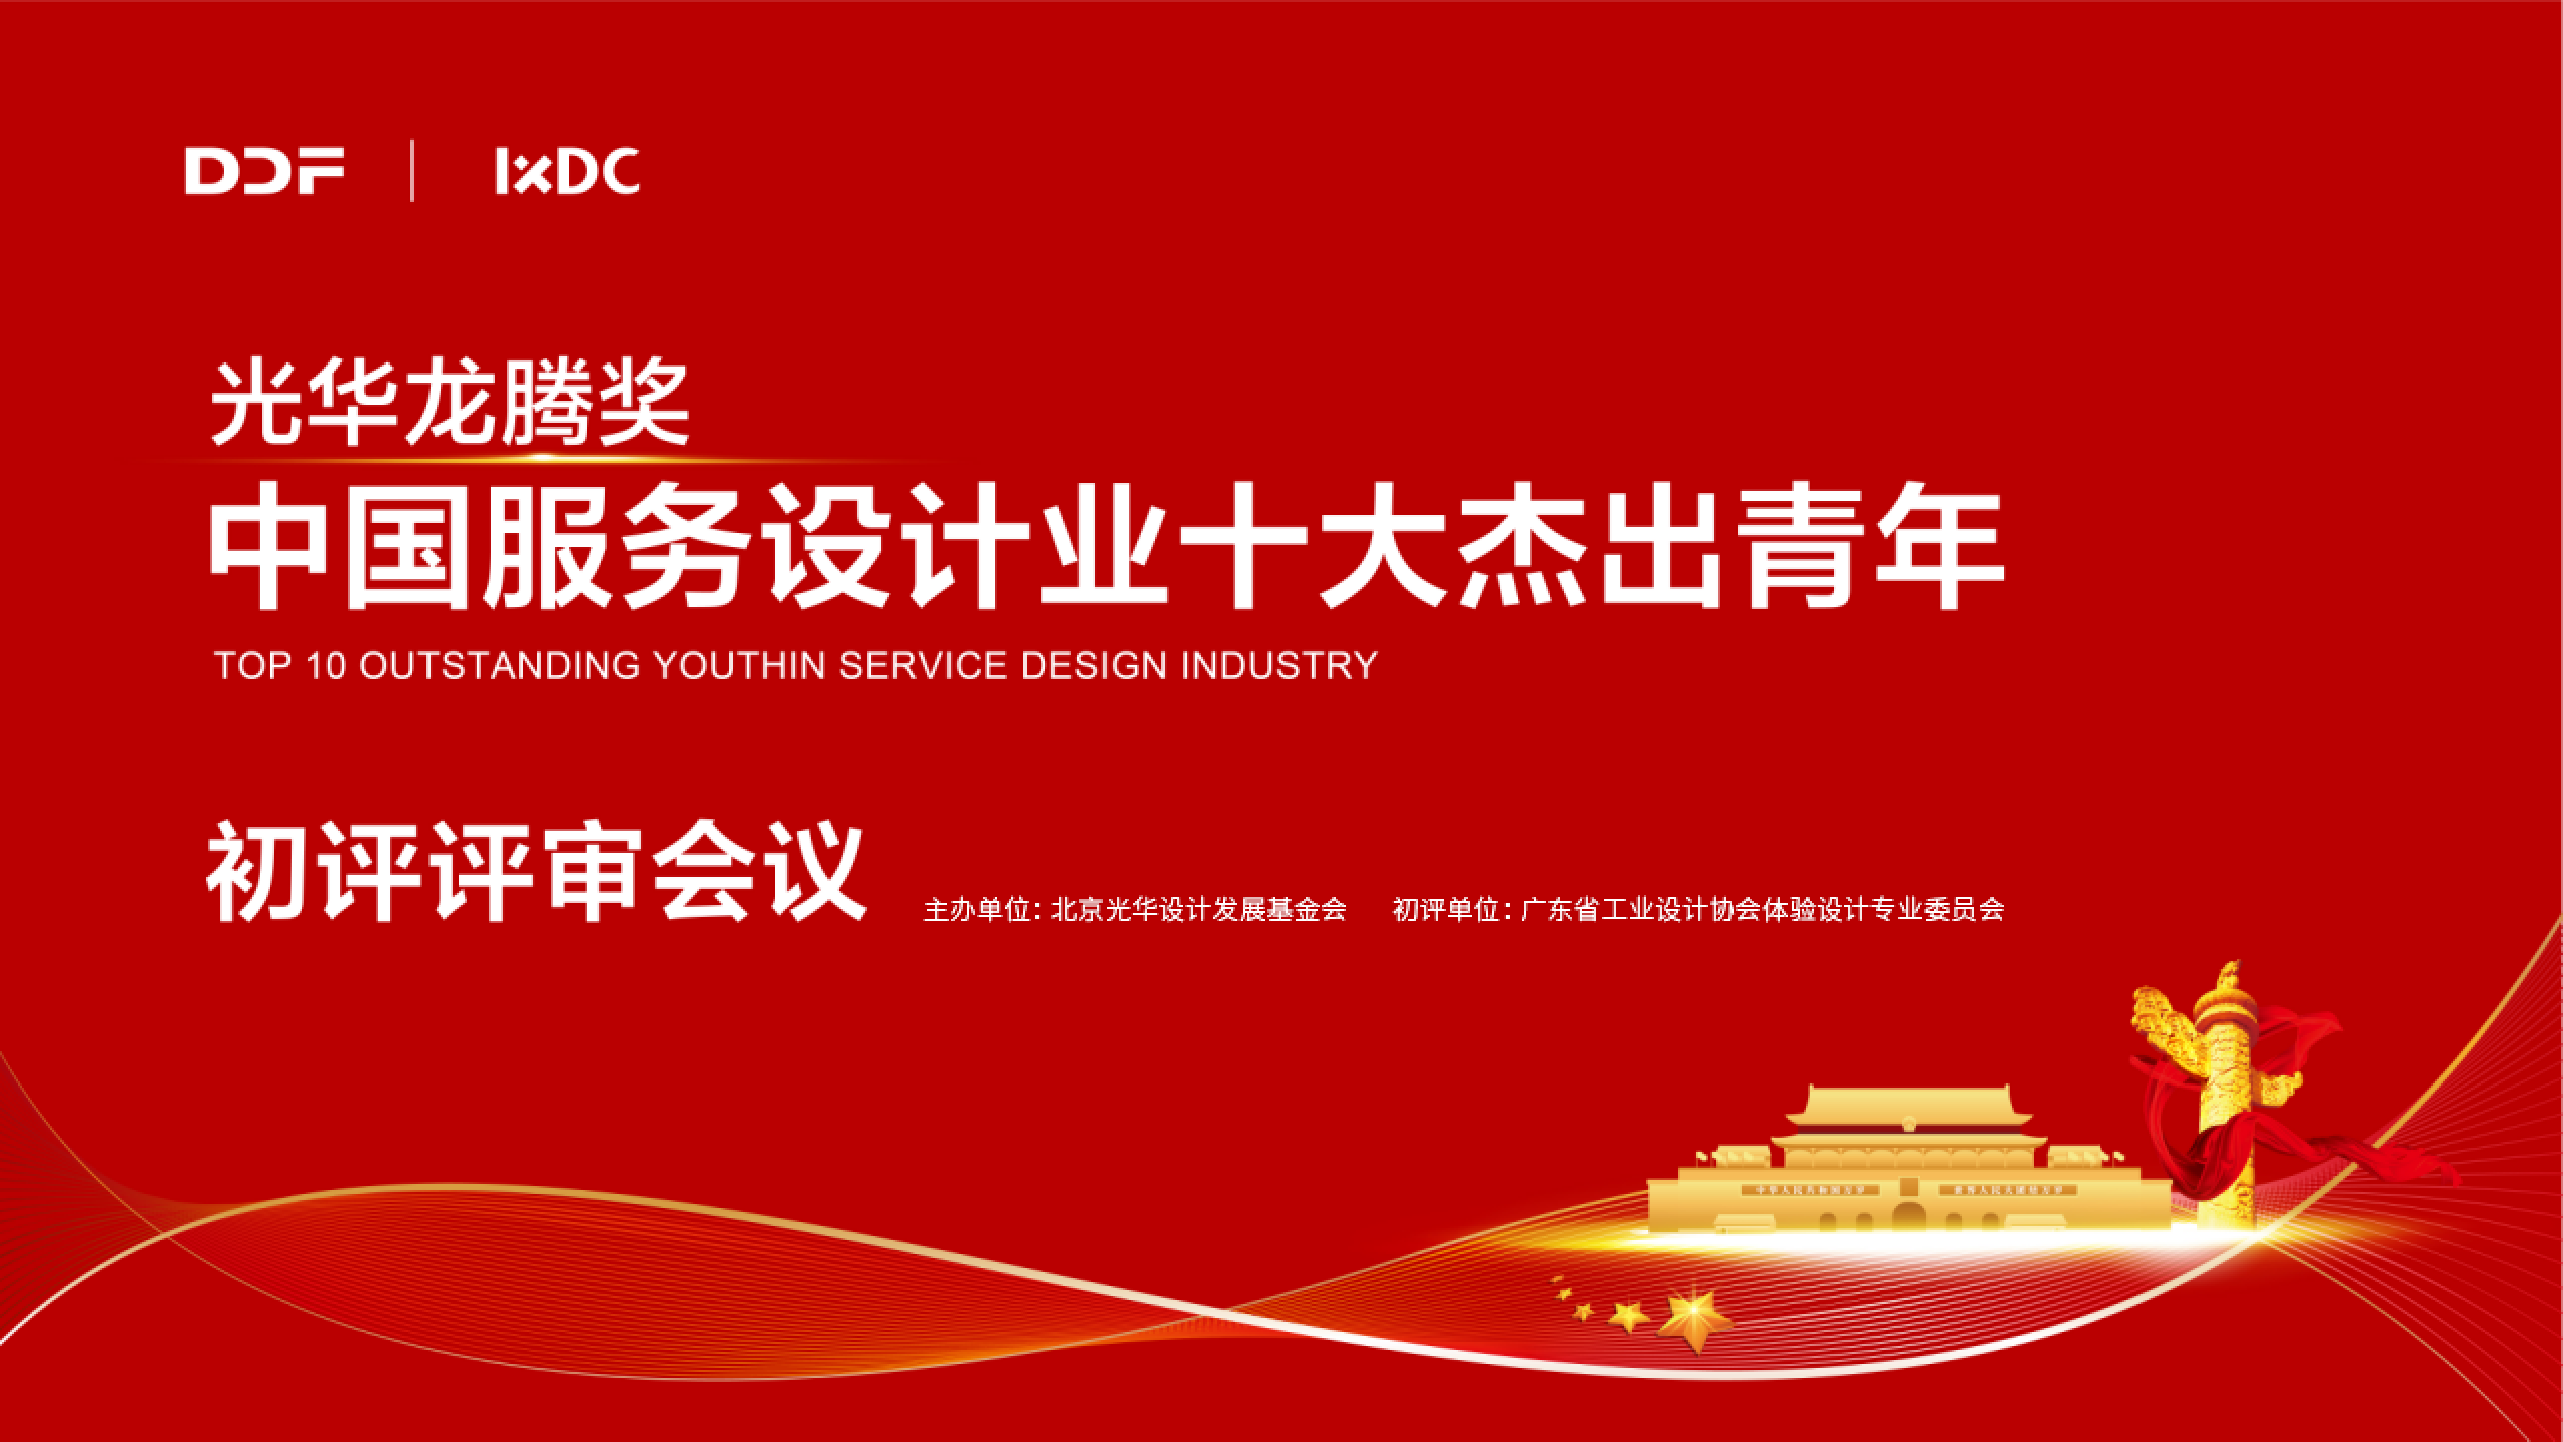 2021光华龙腾奖·中国服务设计业十大杰出青年提名名单二次公示